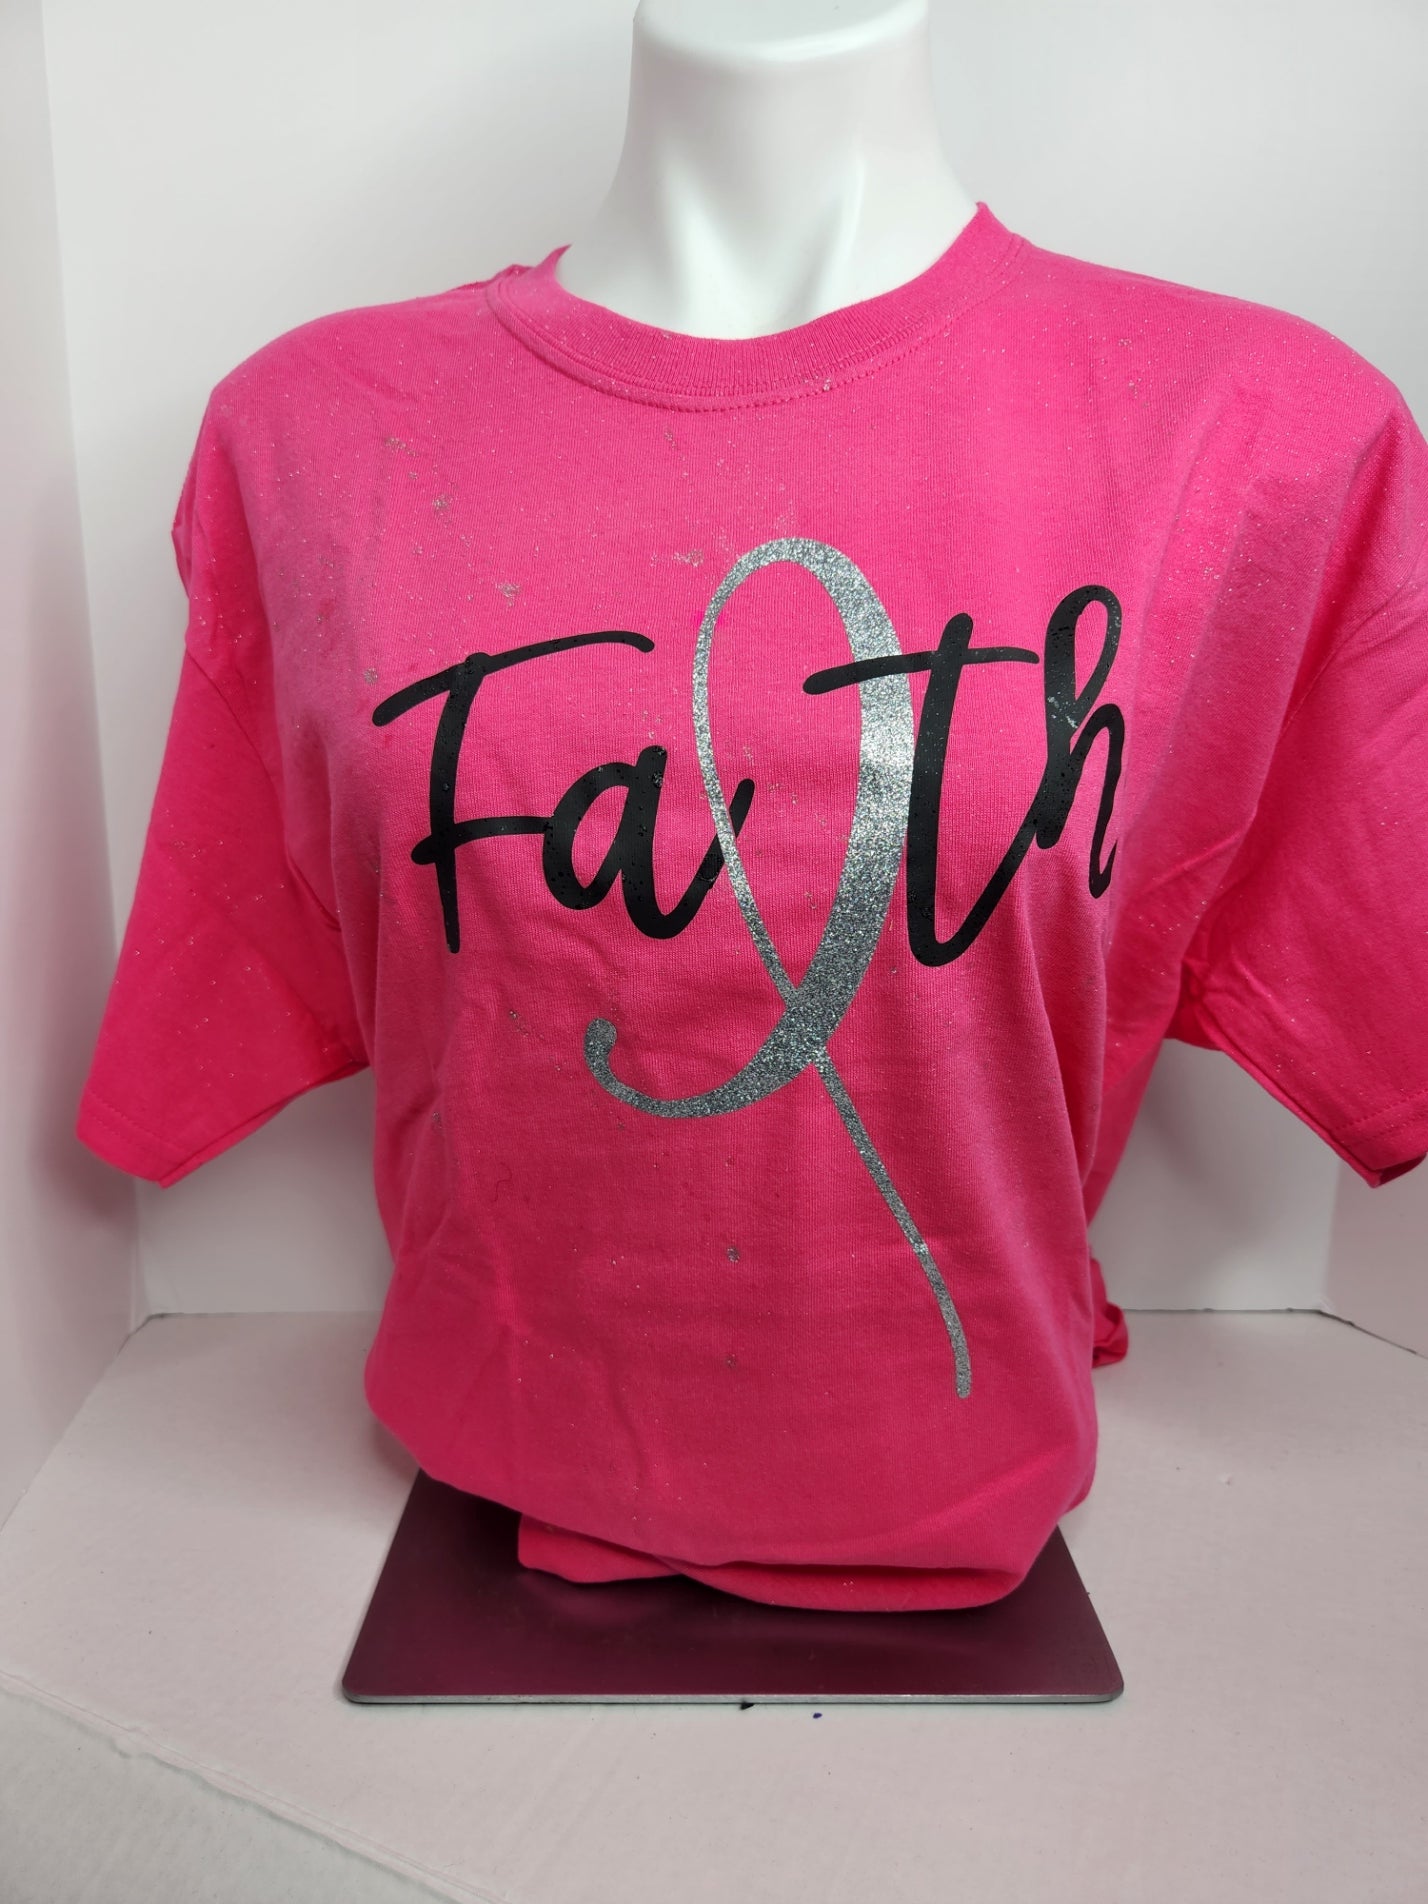 Faith tee in pink